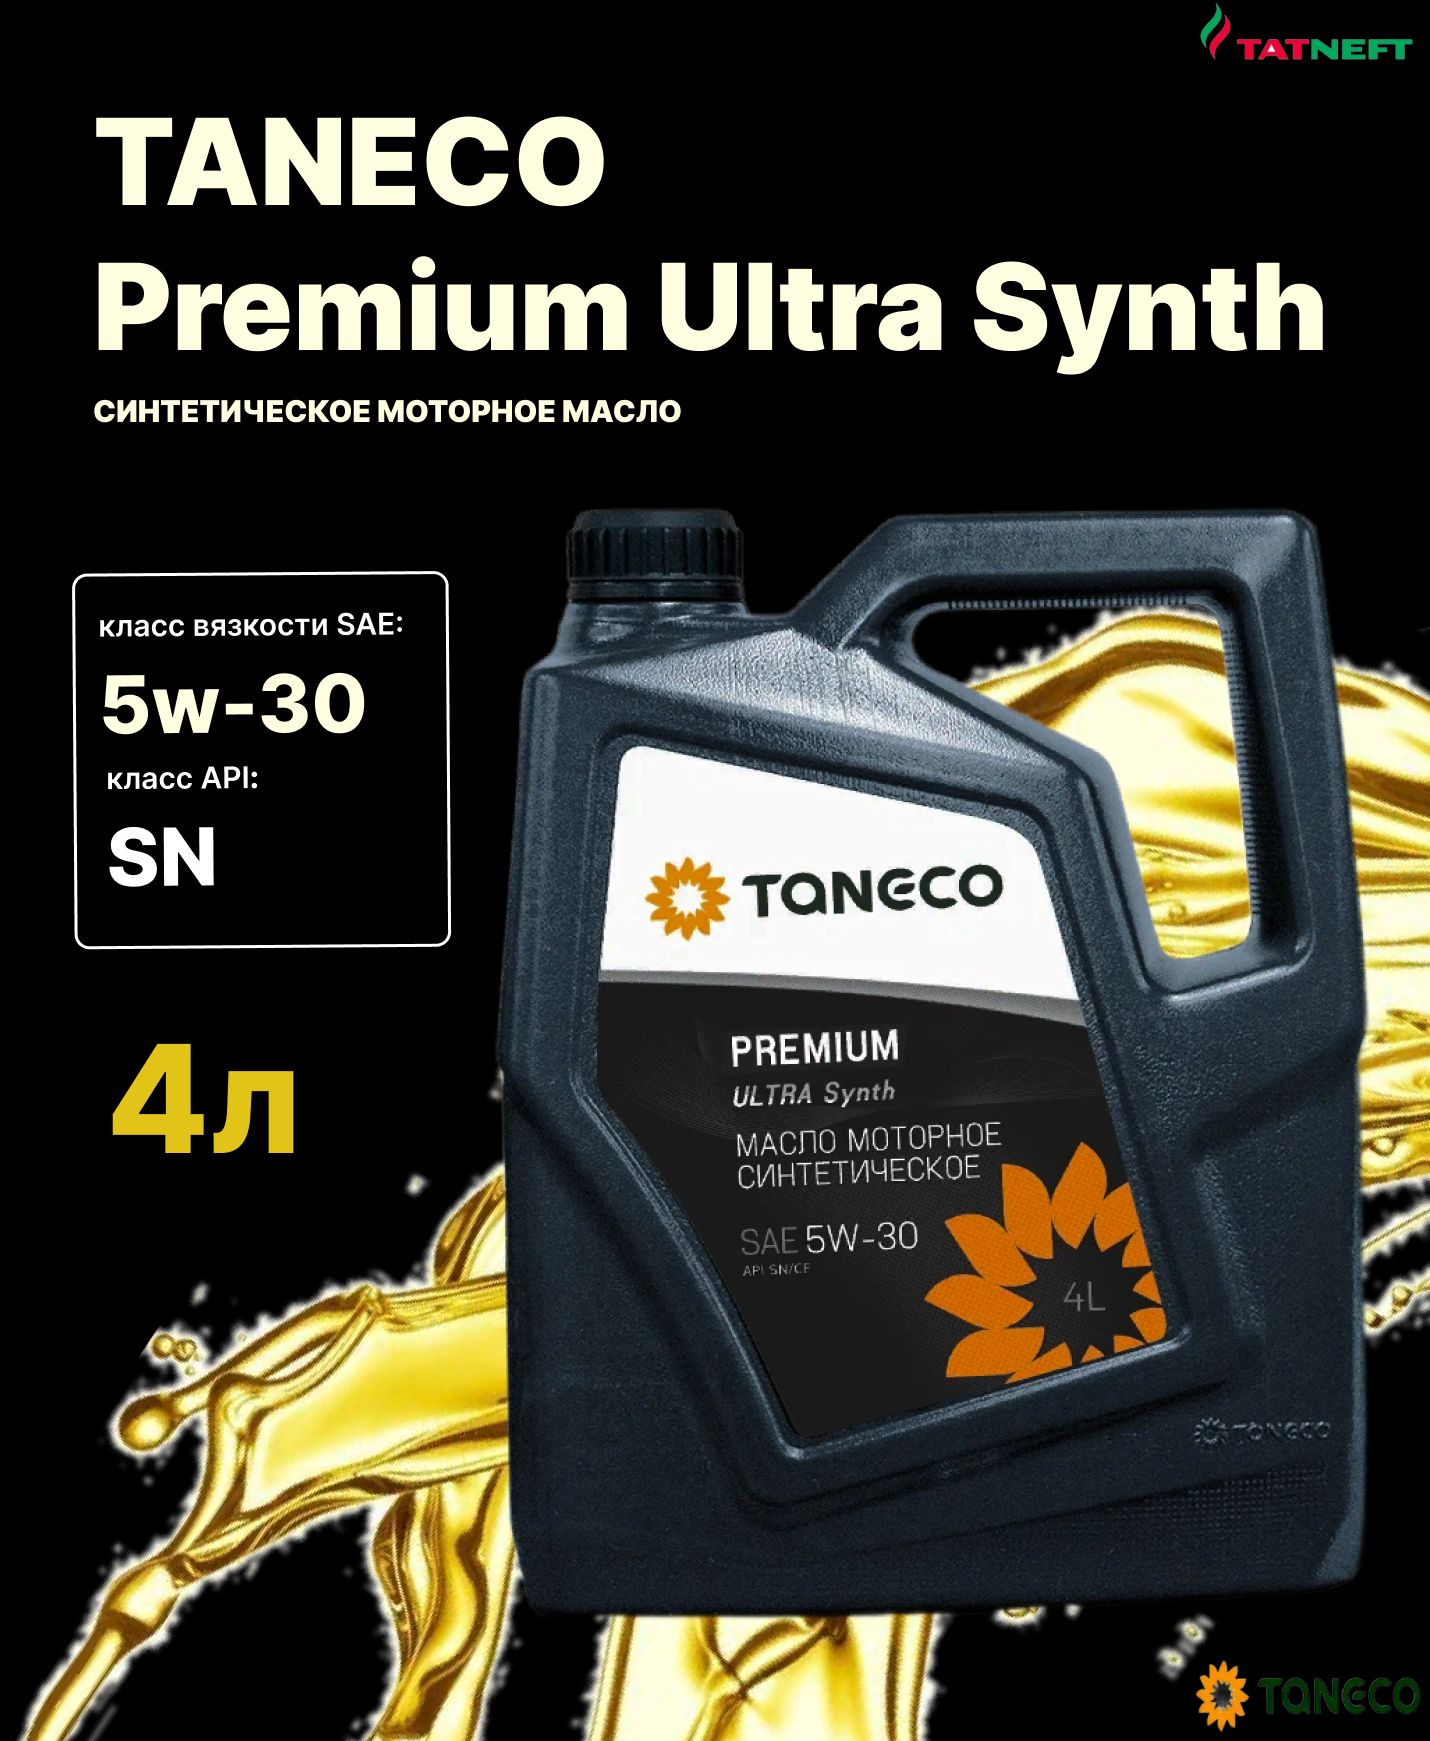 Taneco premium ultra synth 5w. ТАНЕКО премиум ультра синт 5w30.